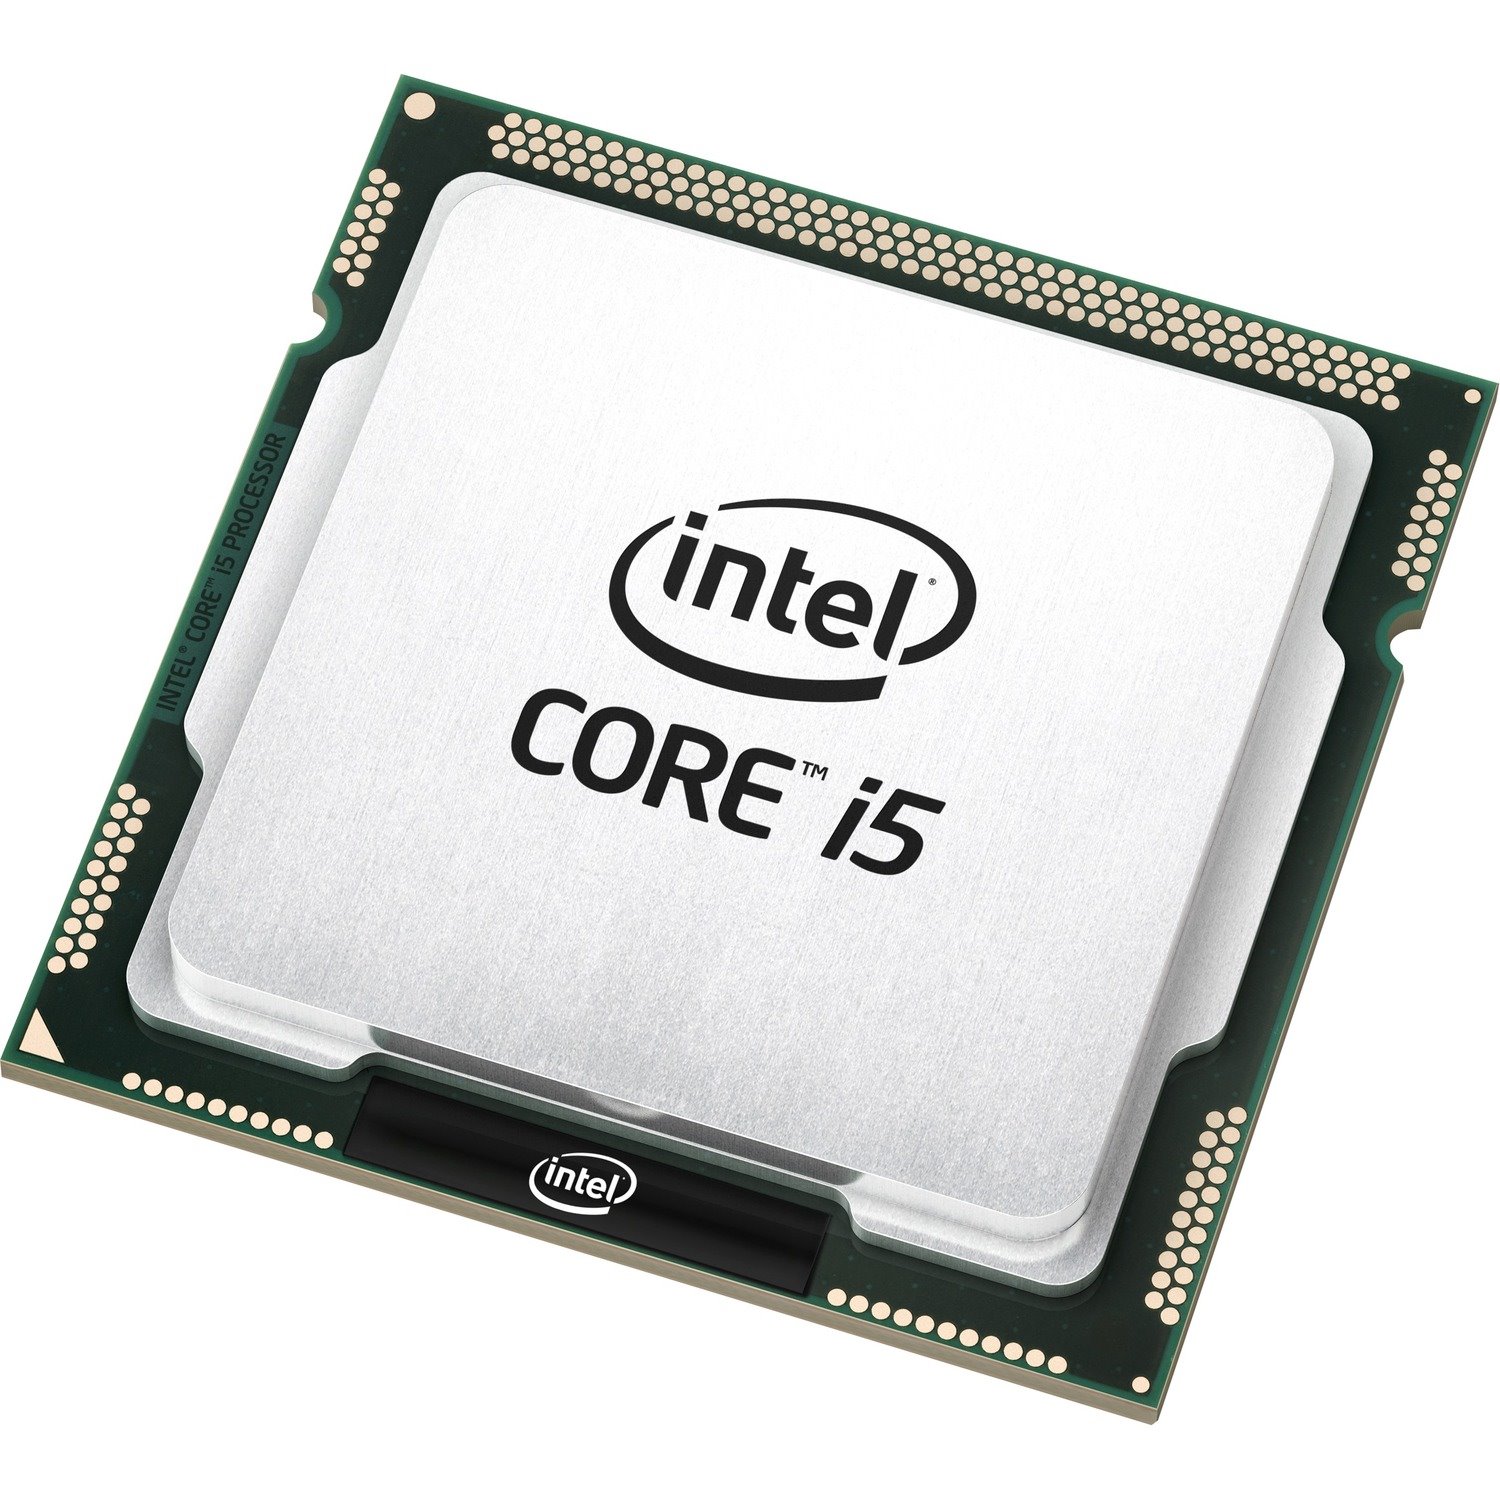 Intel Core i5 i5-4500 i5-4590 Quad-core (4 Core) 3.30 GHz Processor - OEM Pack